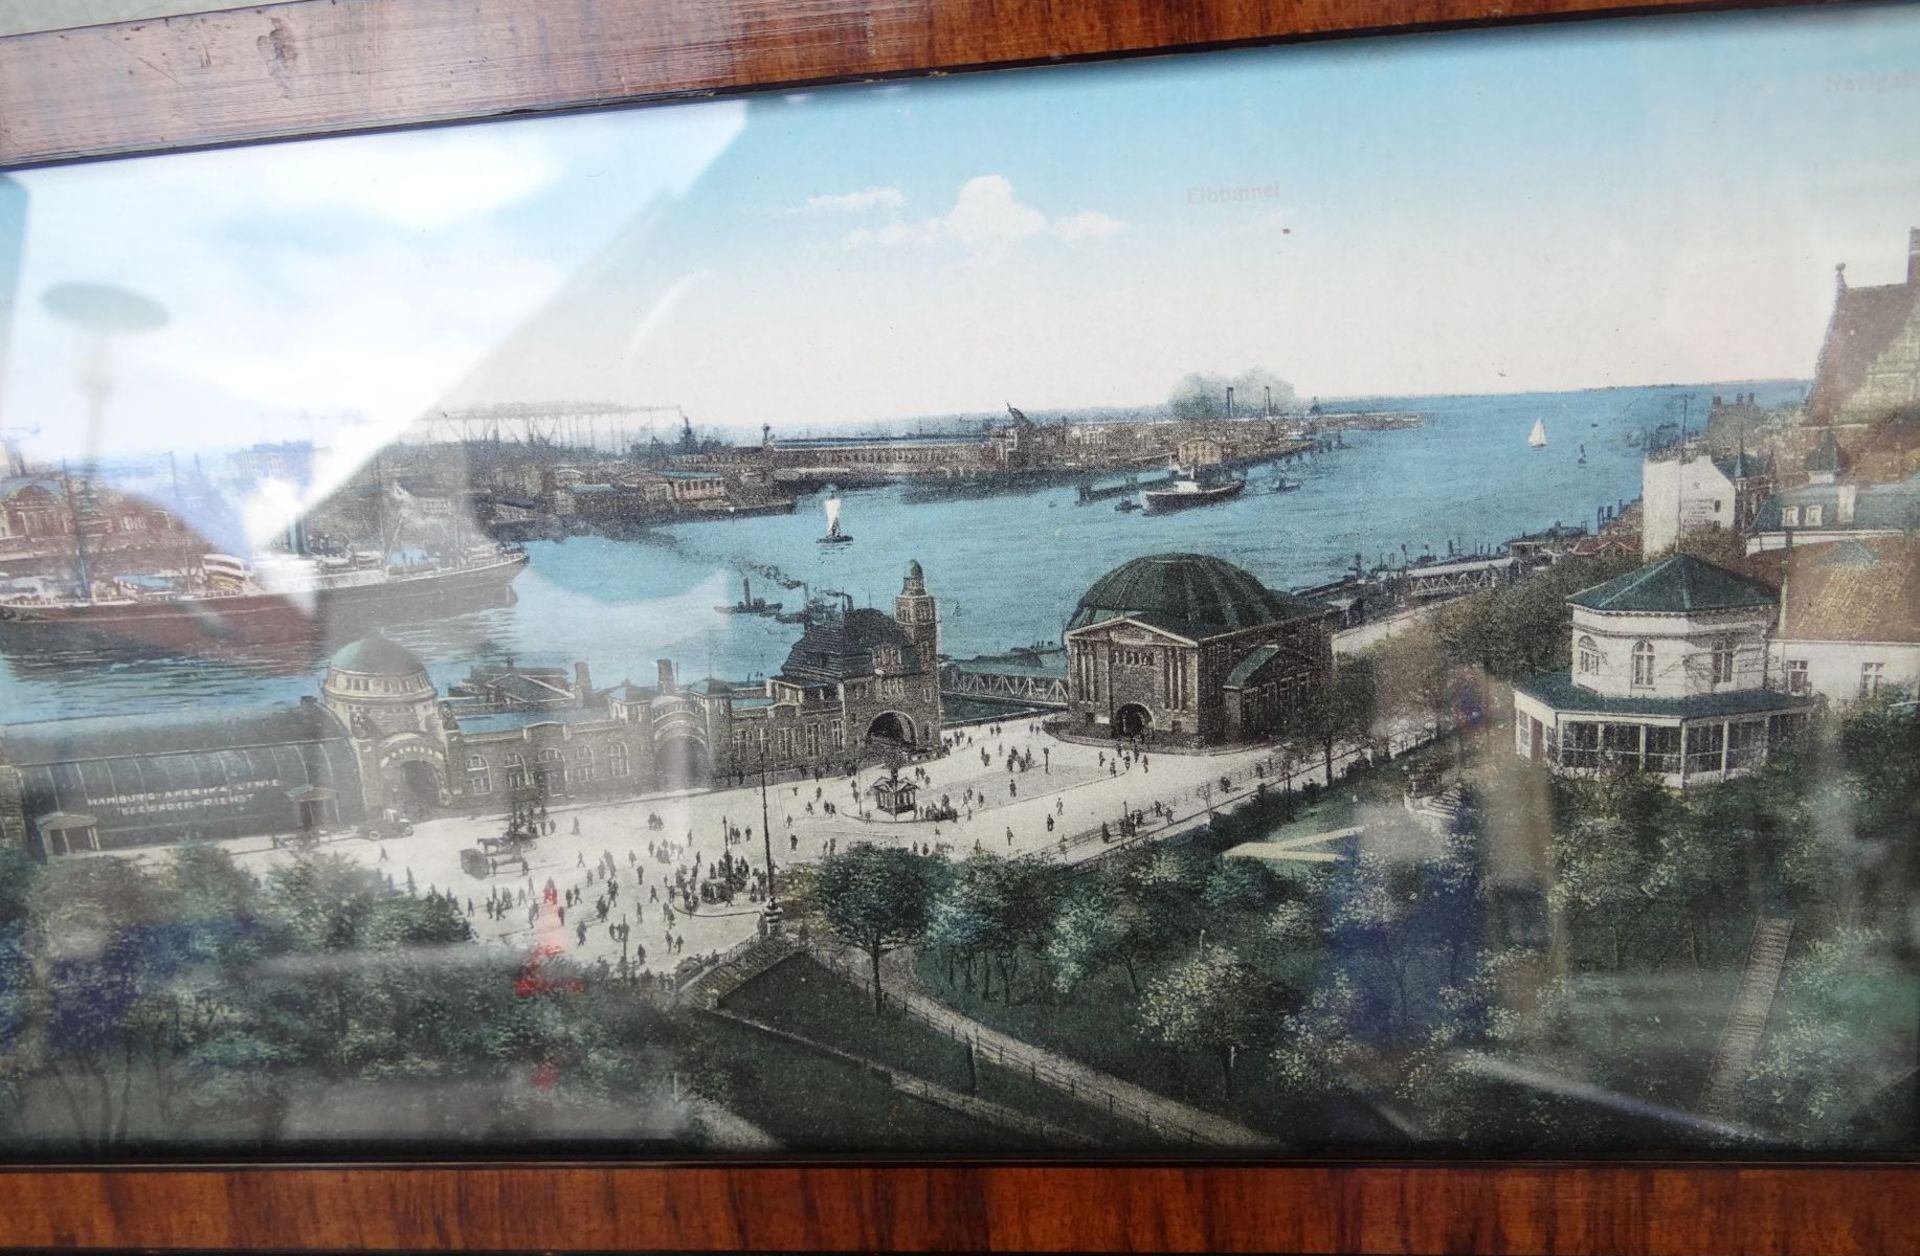 Panorama-Bild vom Hamburger Hafen, ger/Glas, 72x16 cm - Bild 3 aus 4